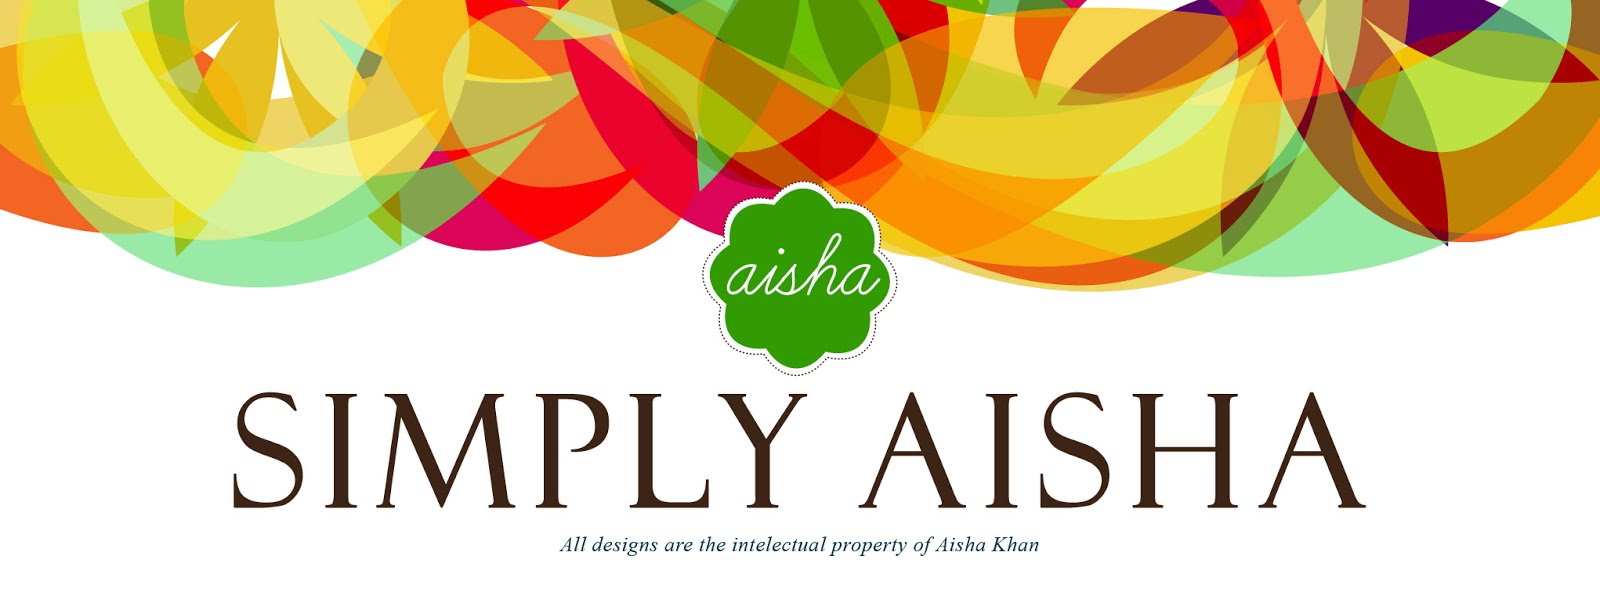 Simply Aisha